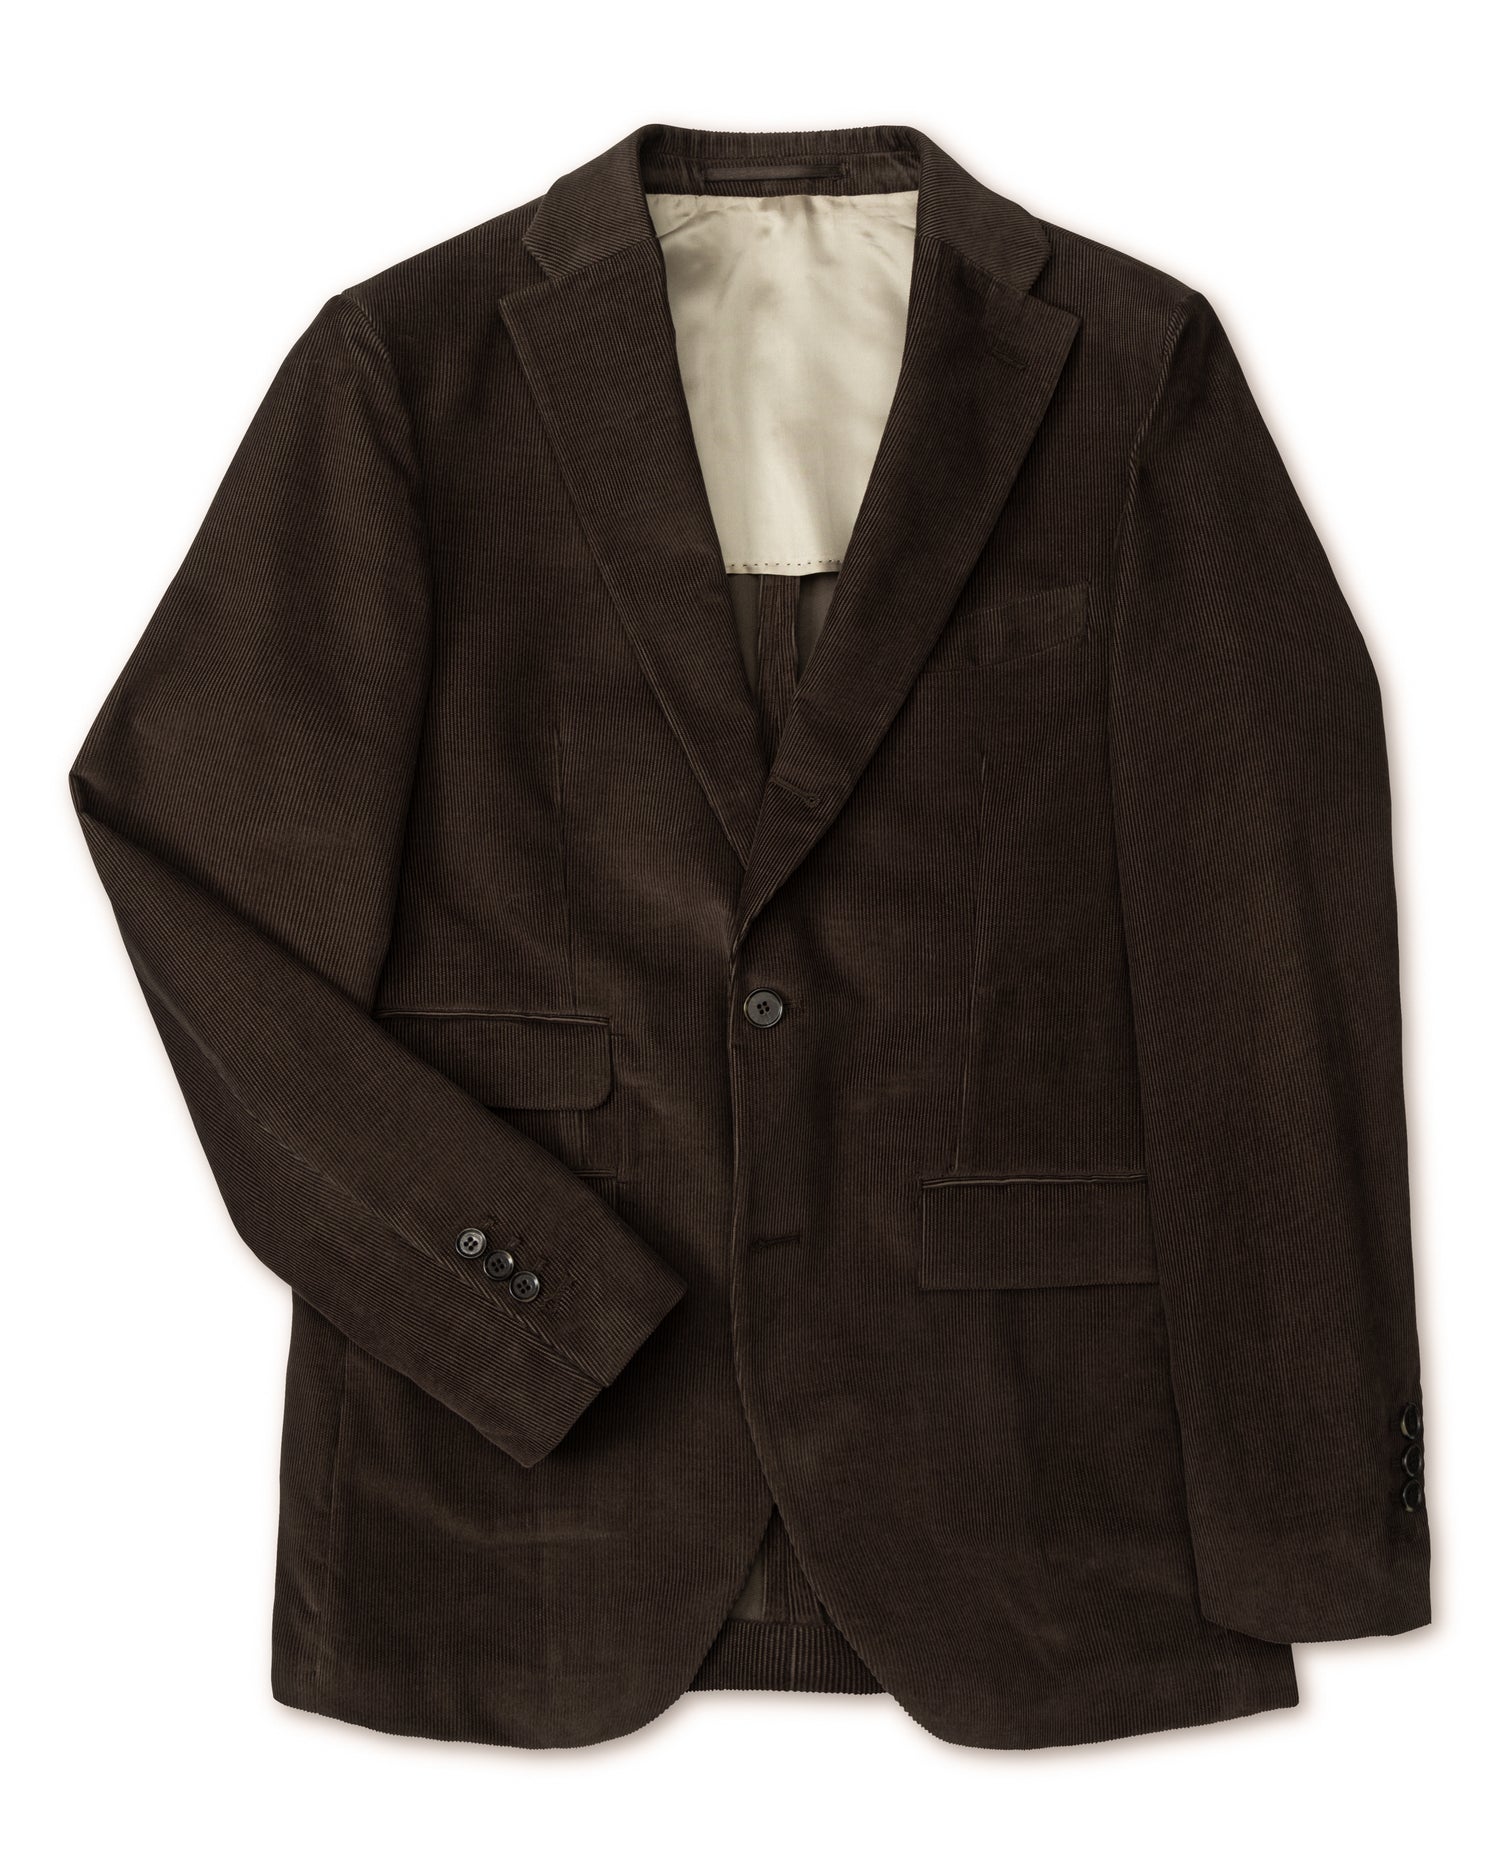 Brown Corduroy Suit in Slim fit (8480000475466)